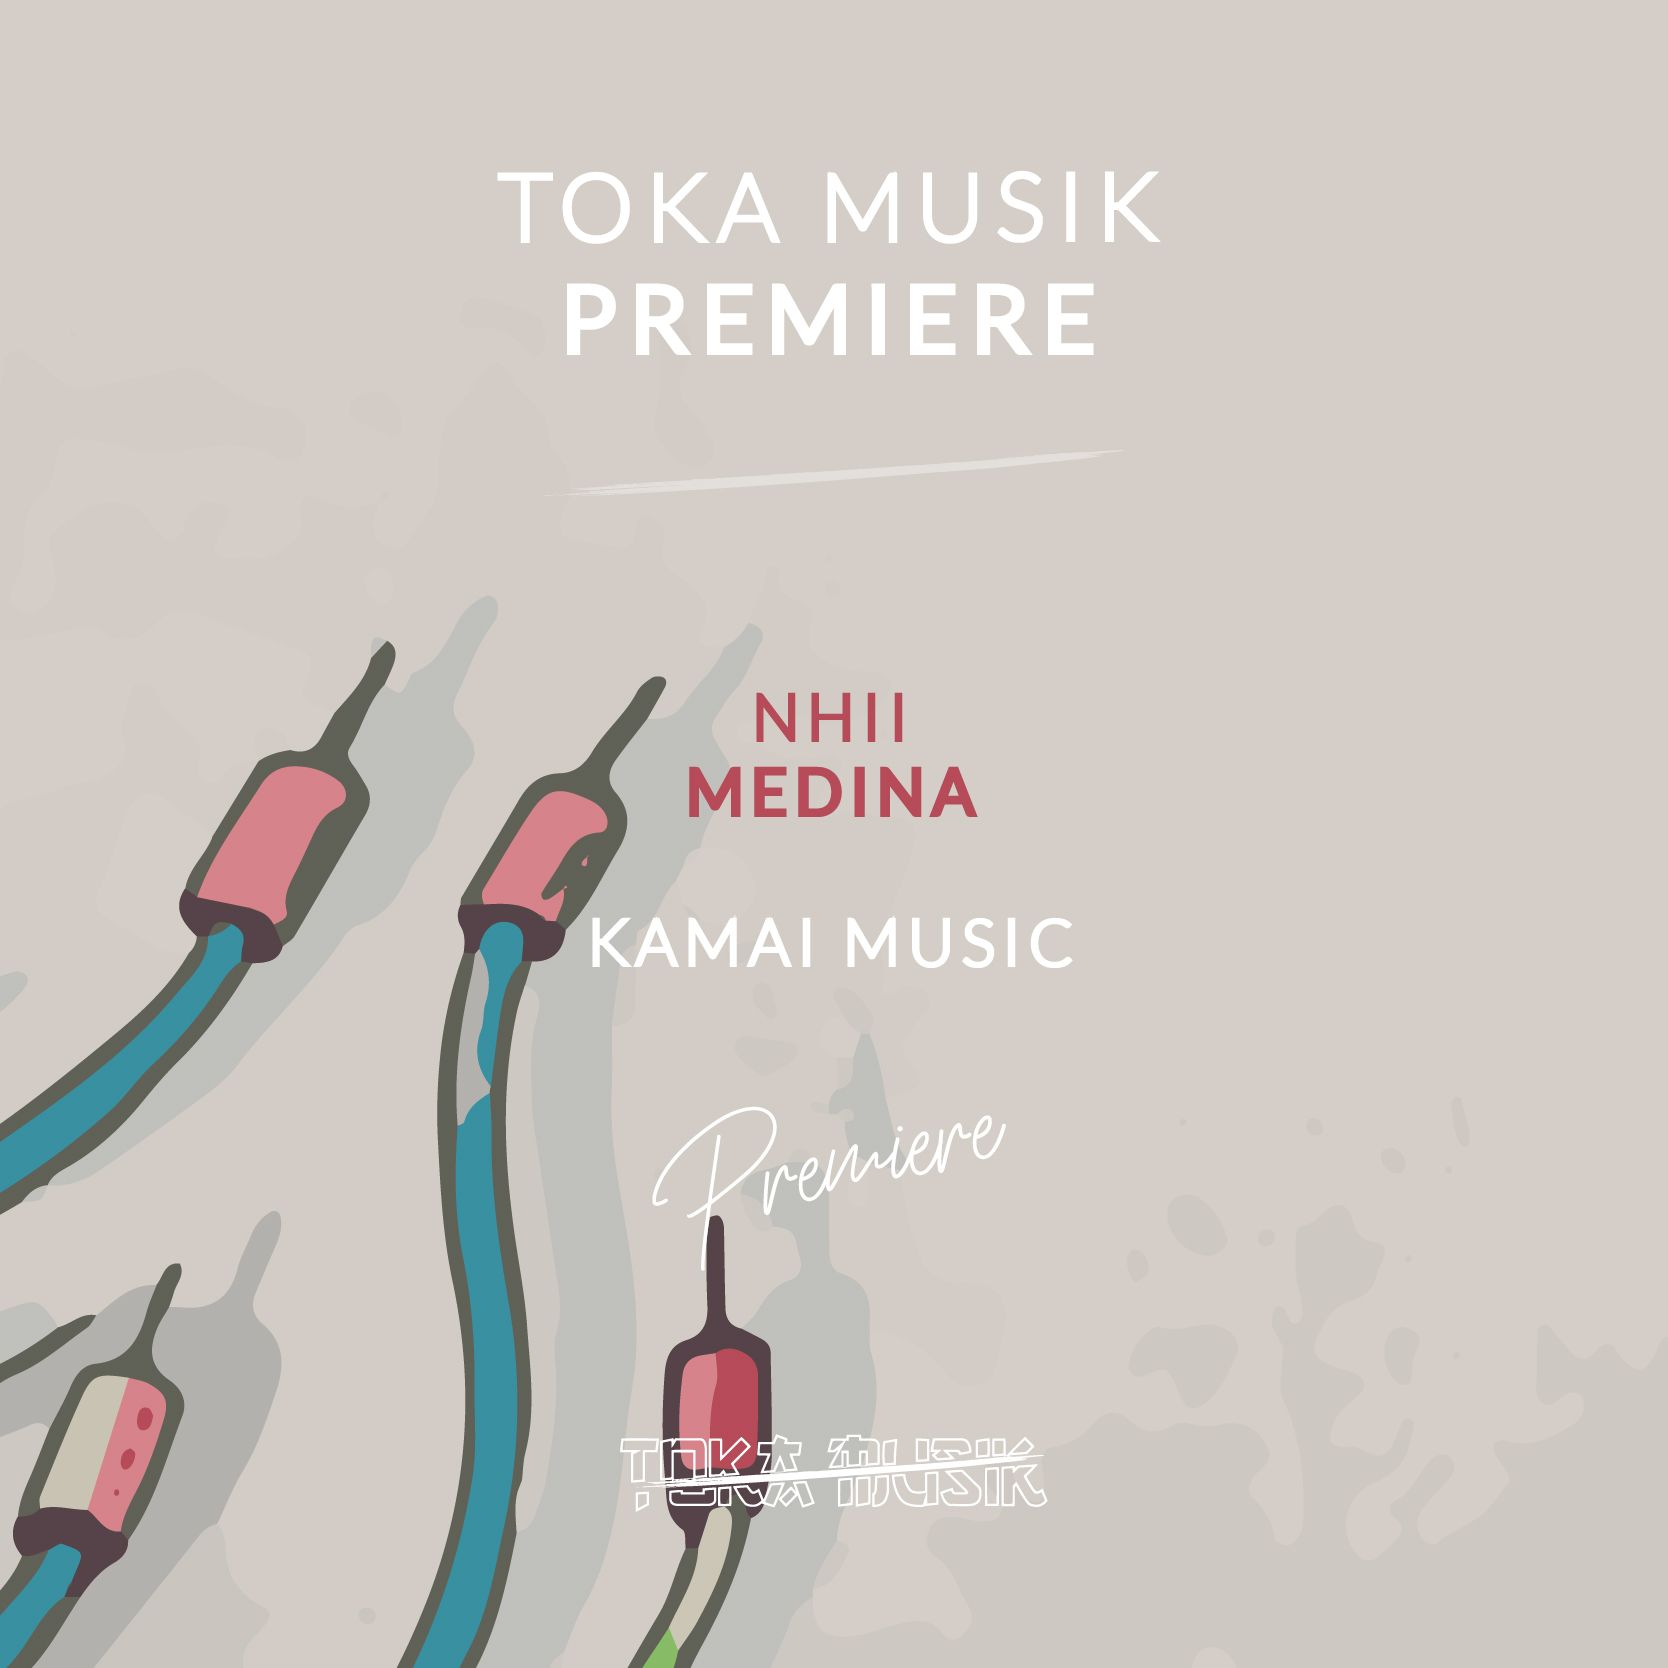 ဒေါင်းလုပ် PREMIERE: Nhii - Medina [Kamai Music]